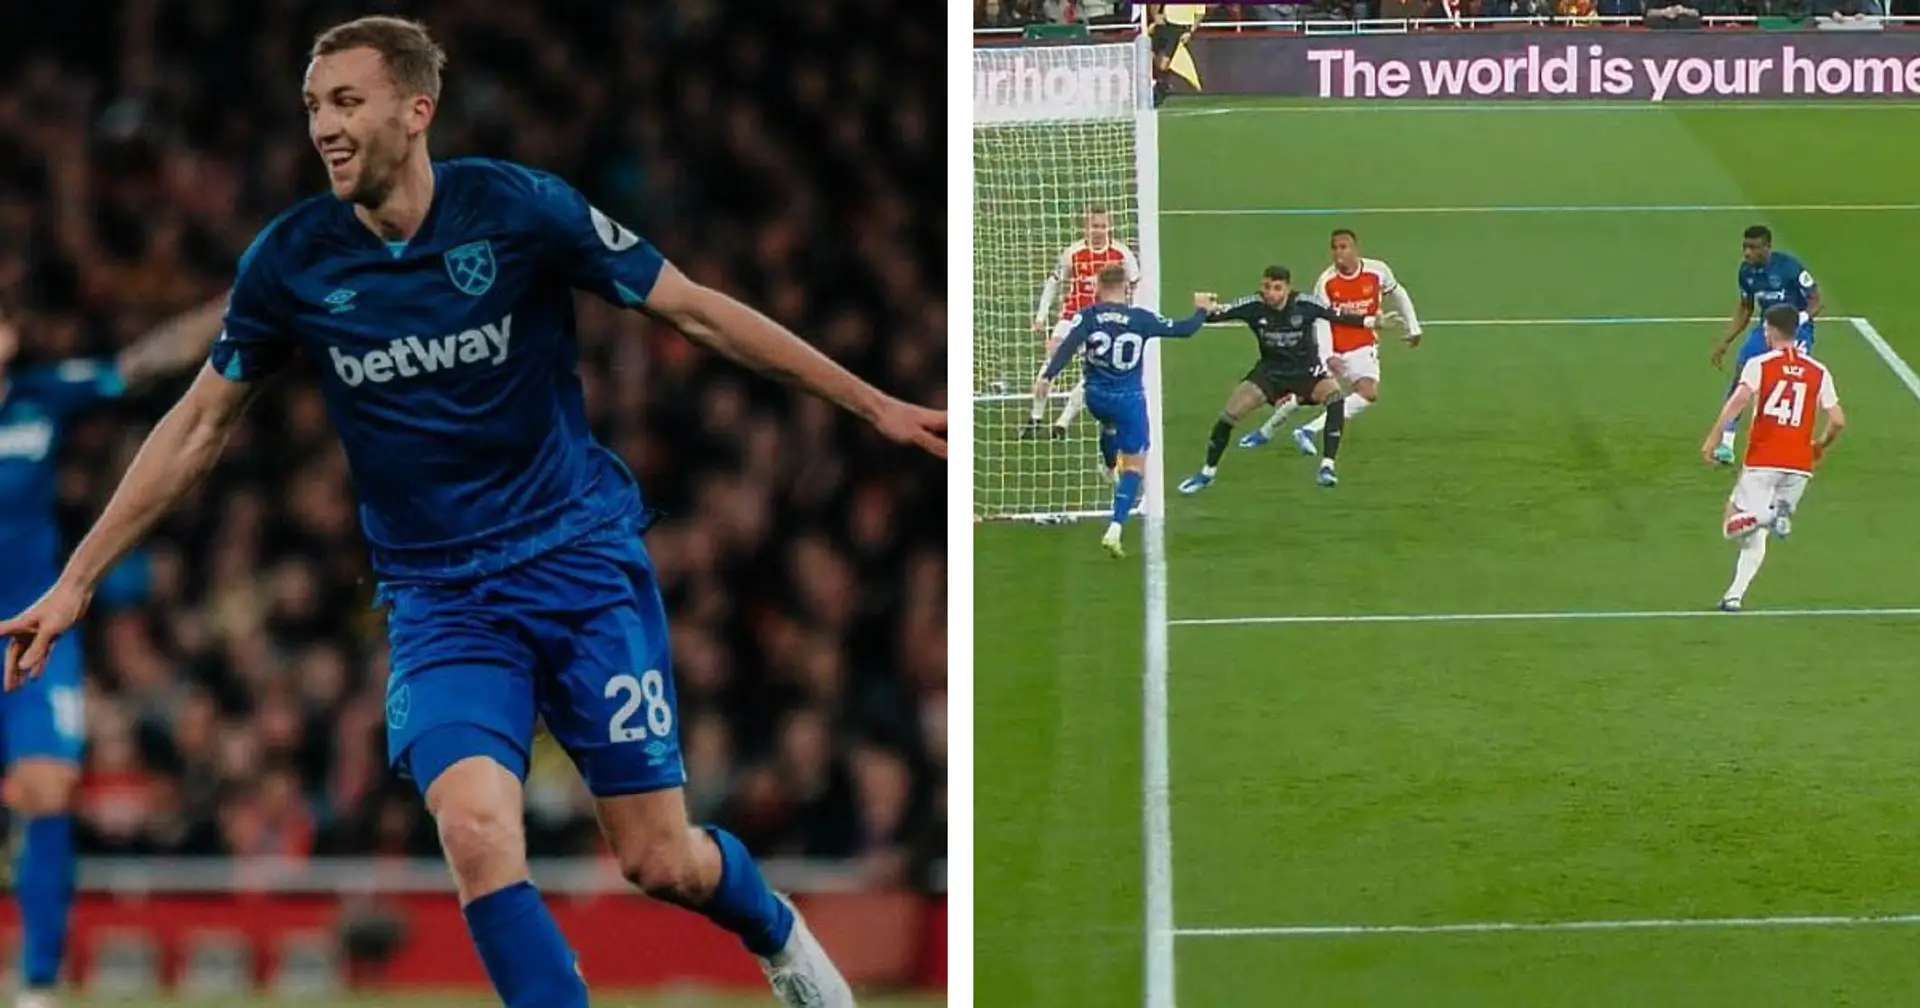 Why Soucek's goal vs Arsenal was given despite ball seemingly going over goalline: explained